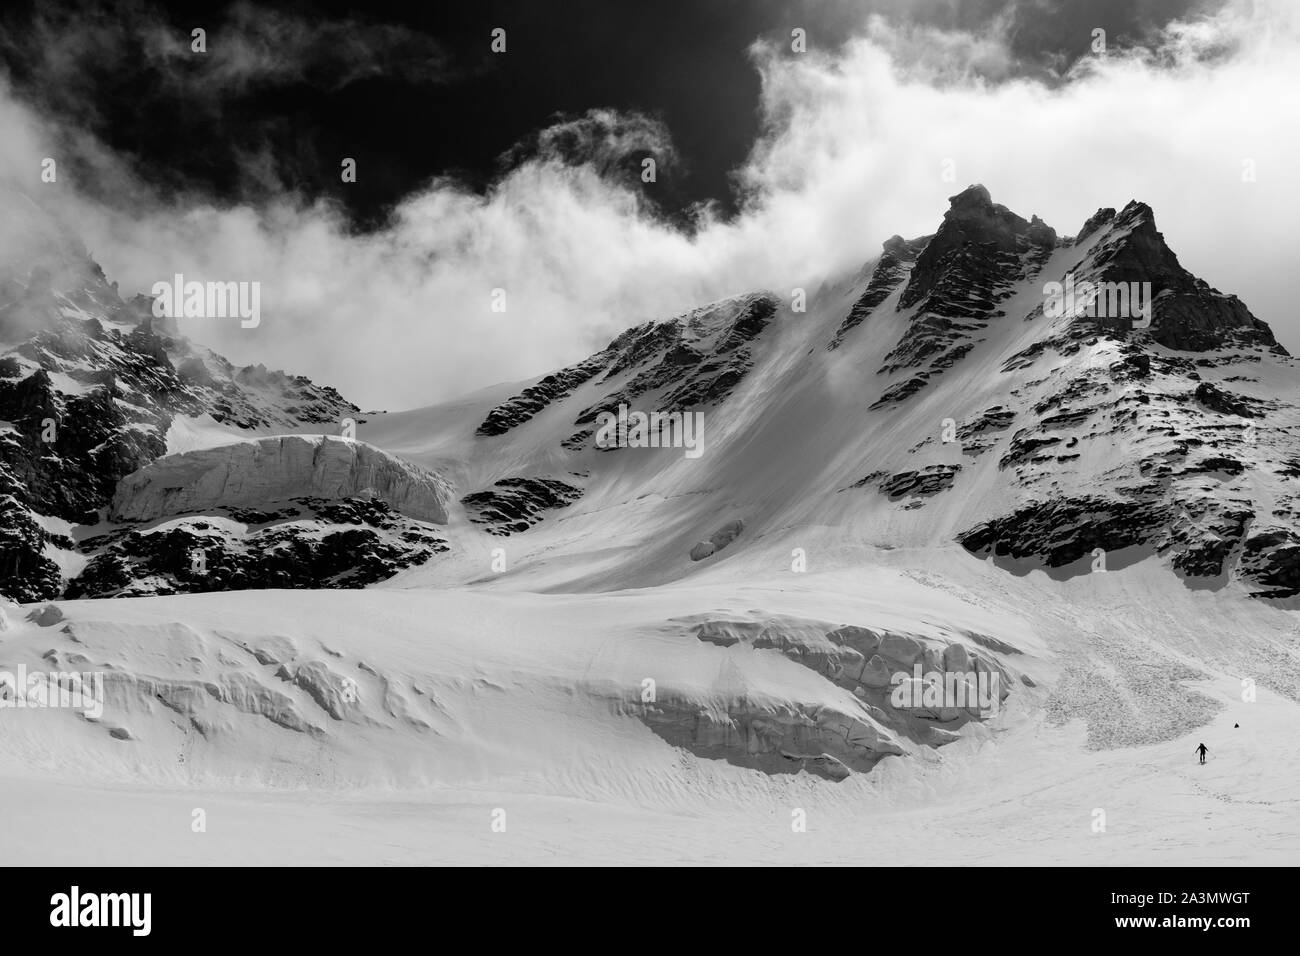 Uomo che discende il Gran Paradiso glacier durante l'inverno il nord-ovest. Il peack è il più alto monte interamente in territorio italiano. Foto Stock